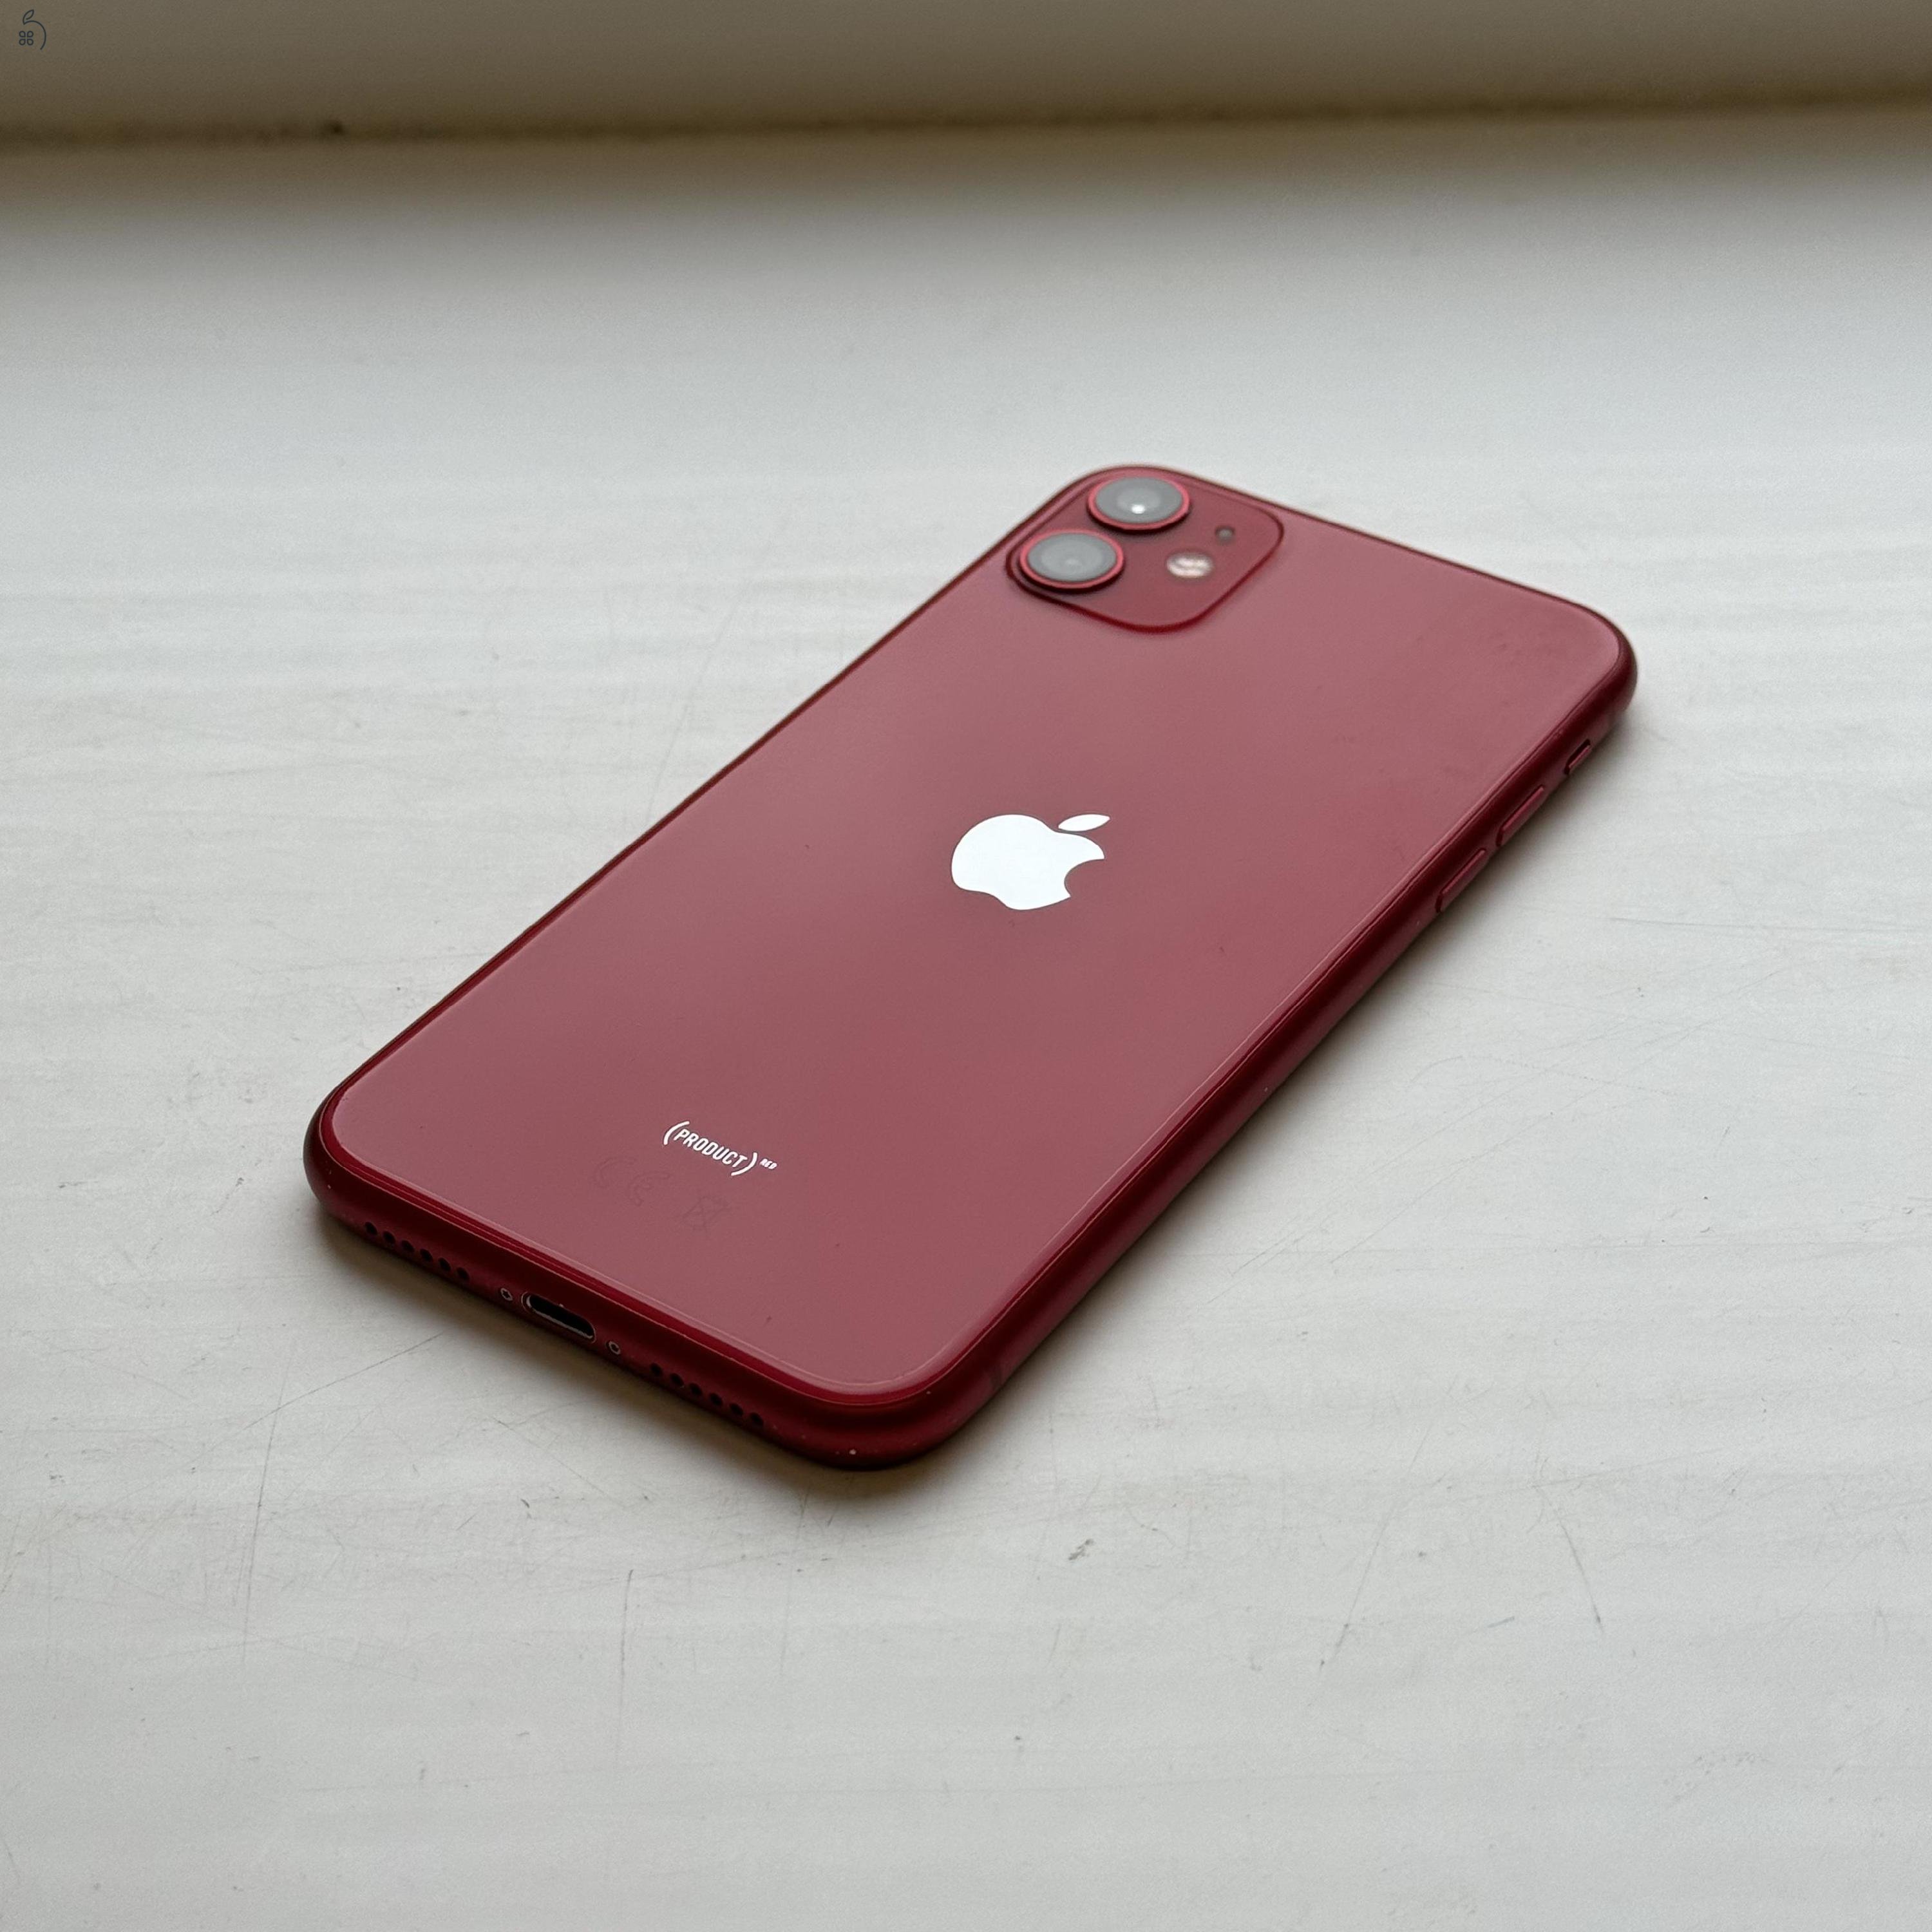 KARCMENTES iPhone 11 64GB Red - 1 ÉV Garancia , Kártyafüggetlen